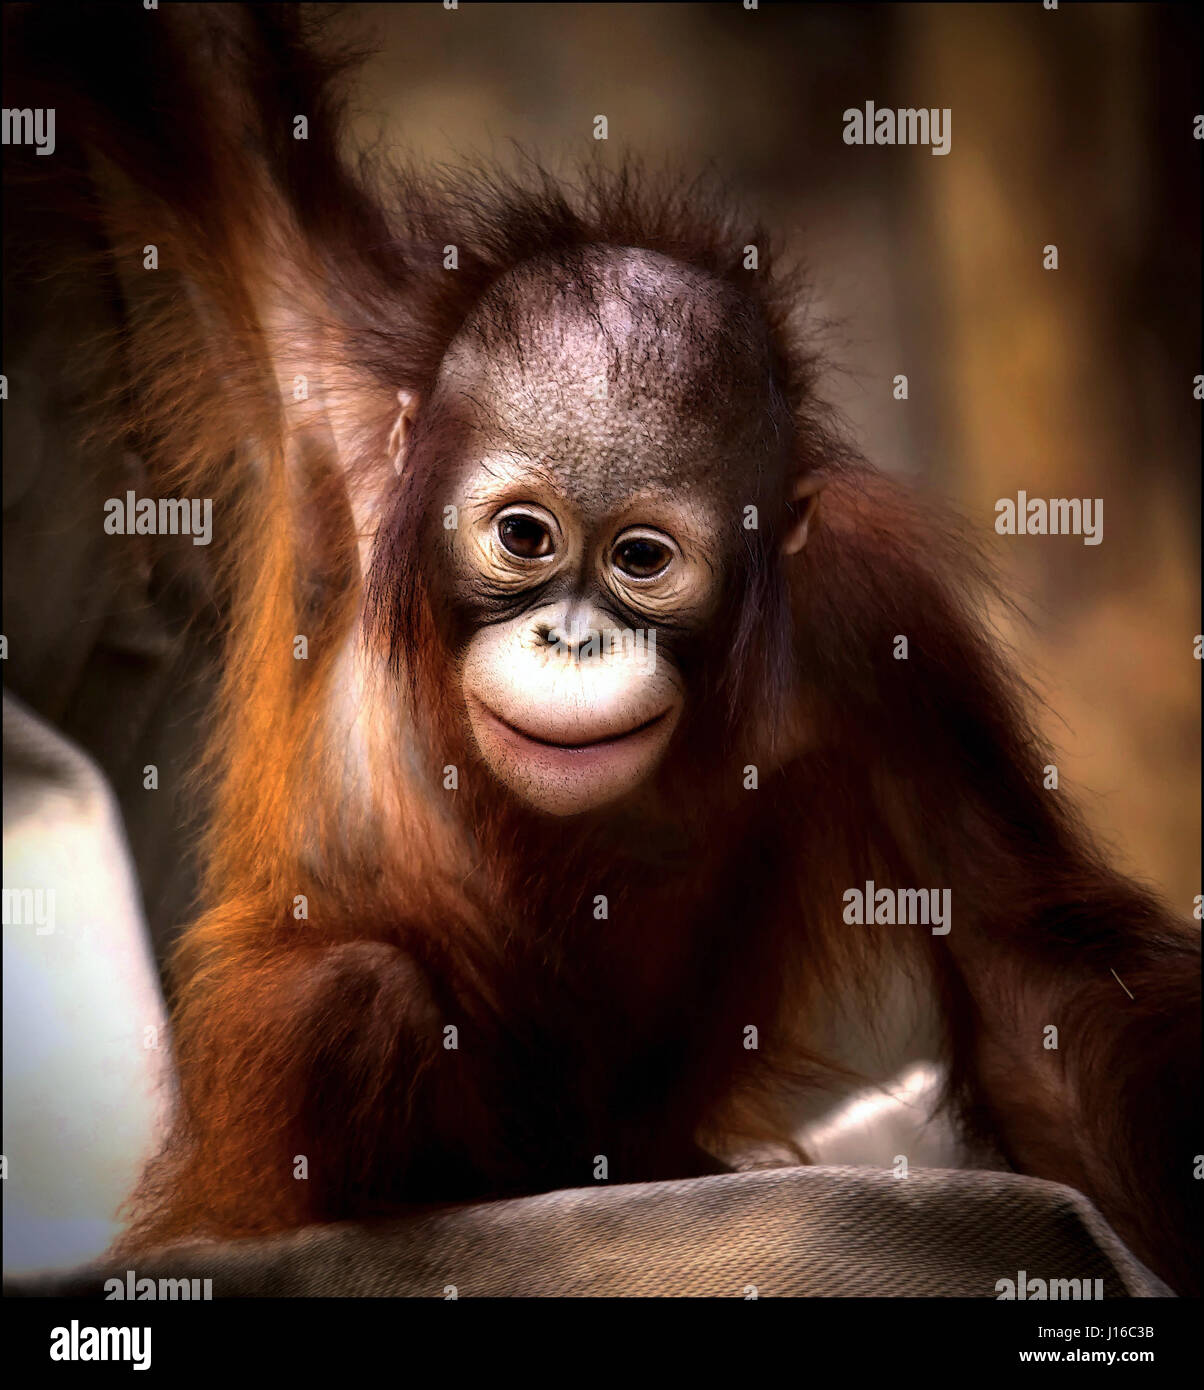 ZOO de Krefeld, Allemagne : Un bébé orang-outan sourit à la caméra. Fusion de coeur Coups de primates bébé pourrait être la plus mignonne que vous verrez cette année. D'une rare et adorable infirmière bonobo chauve sur sa mère pour un bébé gorille poilu juste heureux de jouer dans un tas de paille ces pinte moyennes singes seront un jour de puissantes créatures - mais pour le moment ils sont petits paquets de joie. Autres photos : un bébé orang-outan juste heureux d'être vivant, cute bonobos et un jeune chimpanzé s'étendant comme si dans une pose de yoga. Nouveau-né-photographe obsédé et soigneur Sonja Probst (46) de la Bavière ont un ronronnement 3 600 km Banque D'Images